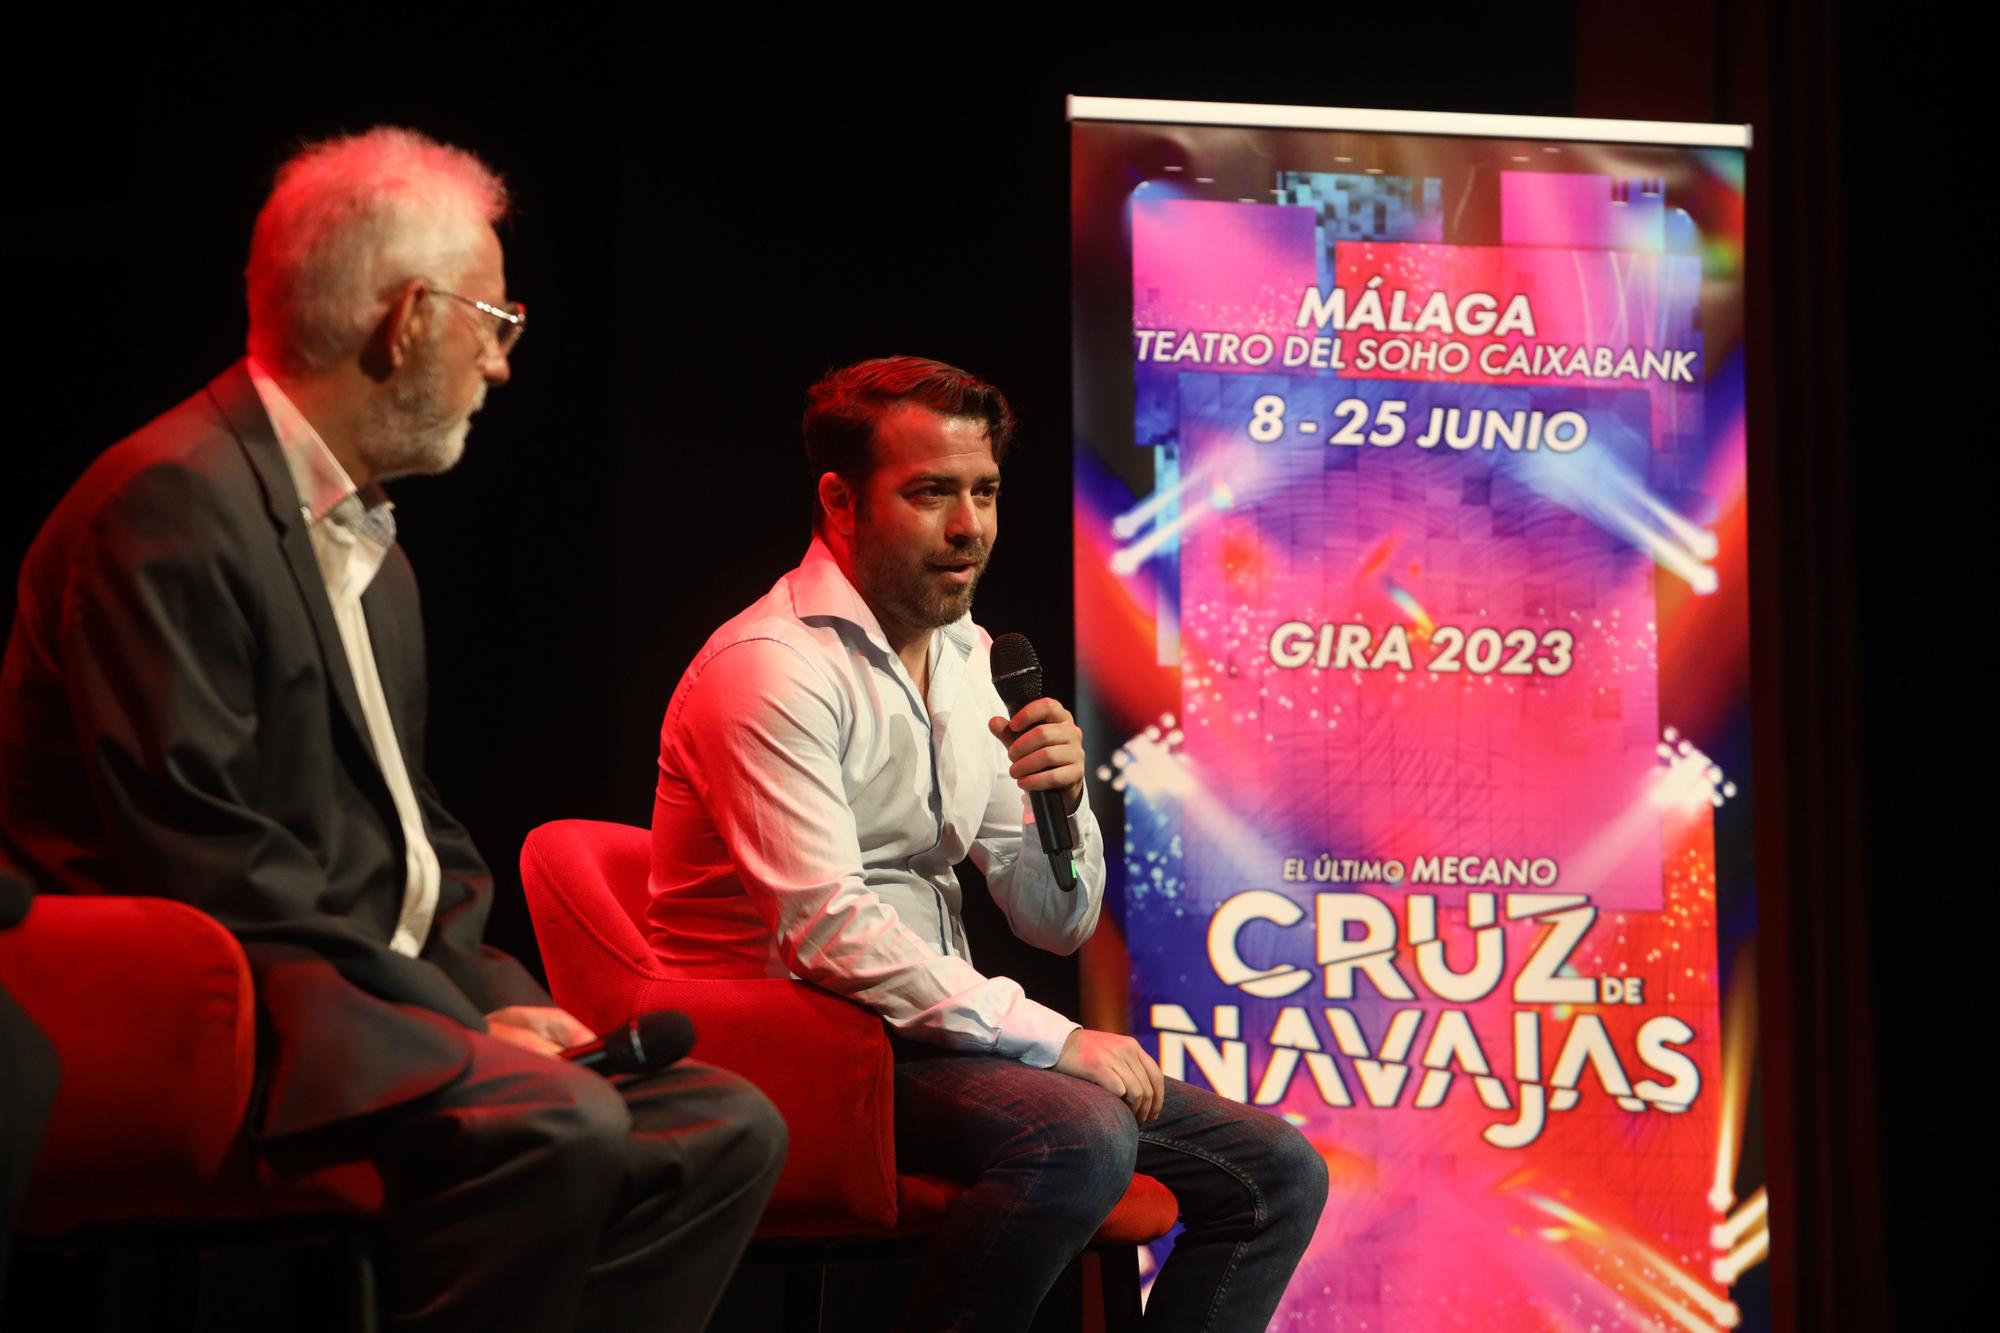 Presentación del musical 'Cruz de Navajas' en el Teatro del Soho